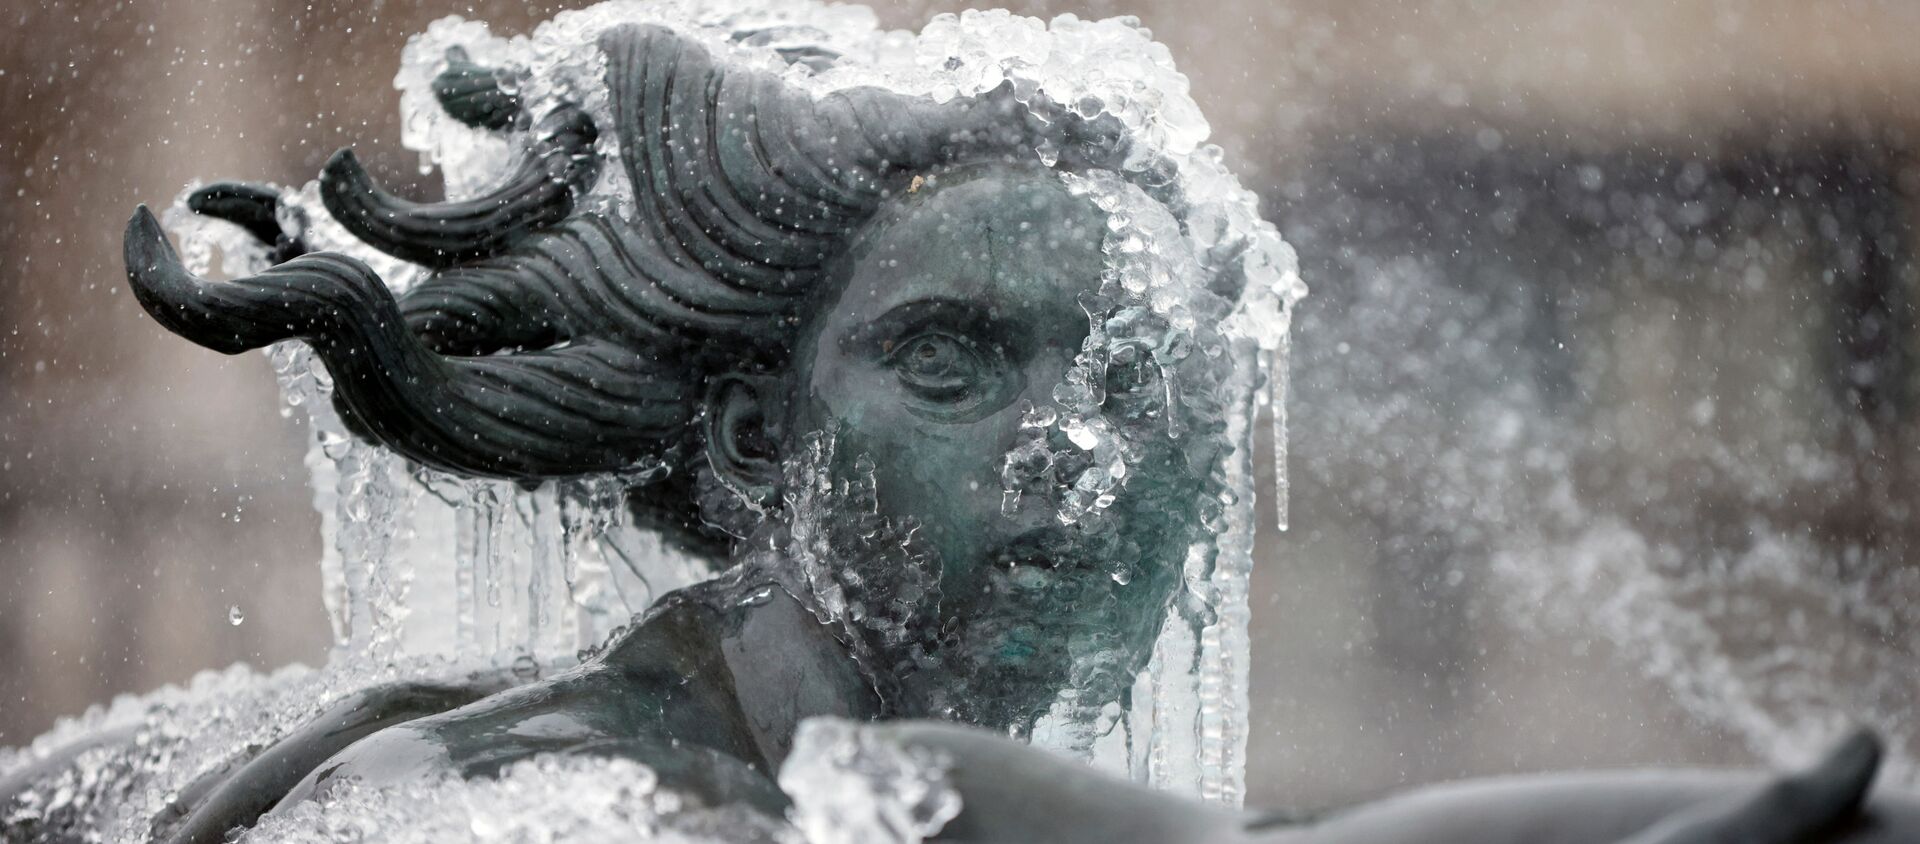 Покрытая льдом статуя на Трафальгарской площади в Лондоне  - Sputnik Lietuva, 1920, 18.02.2021